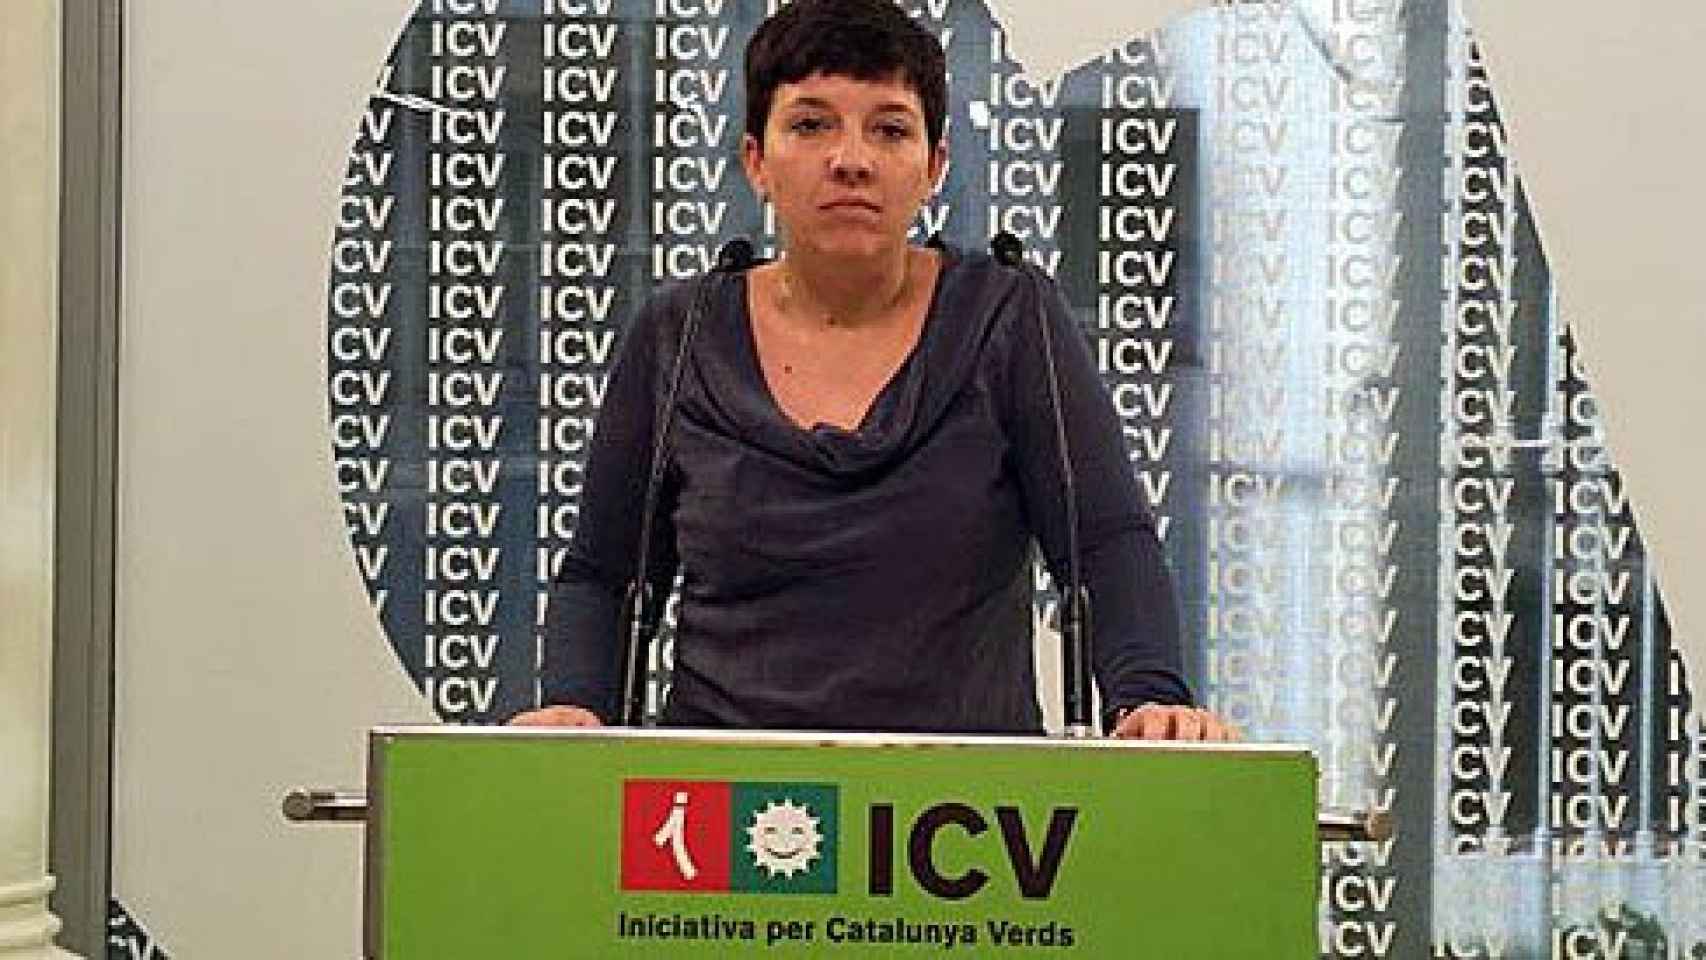 La portavoz y diputada de ICV, Laia Ortiz